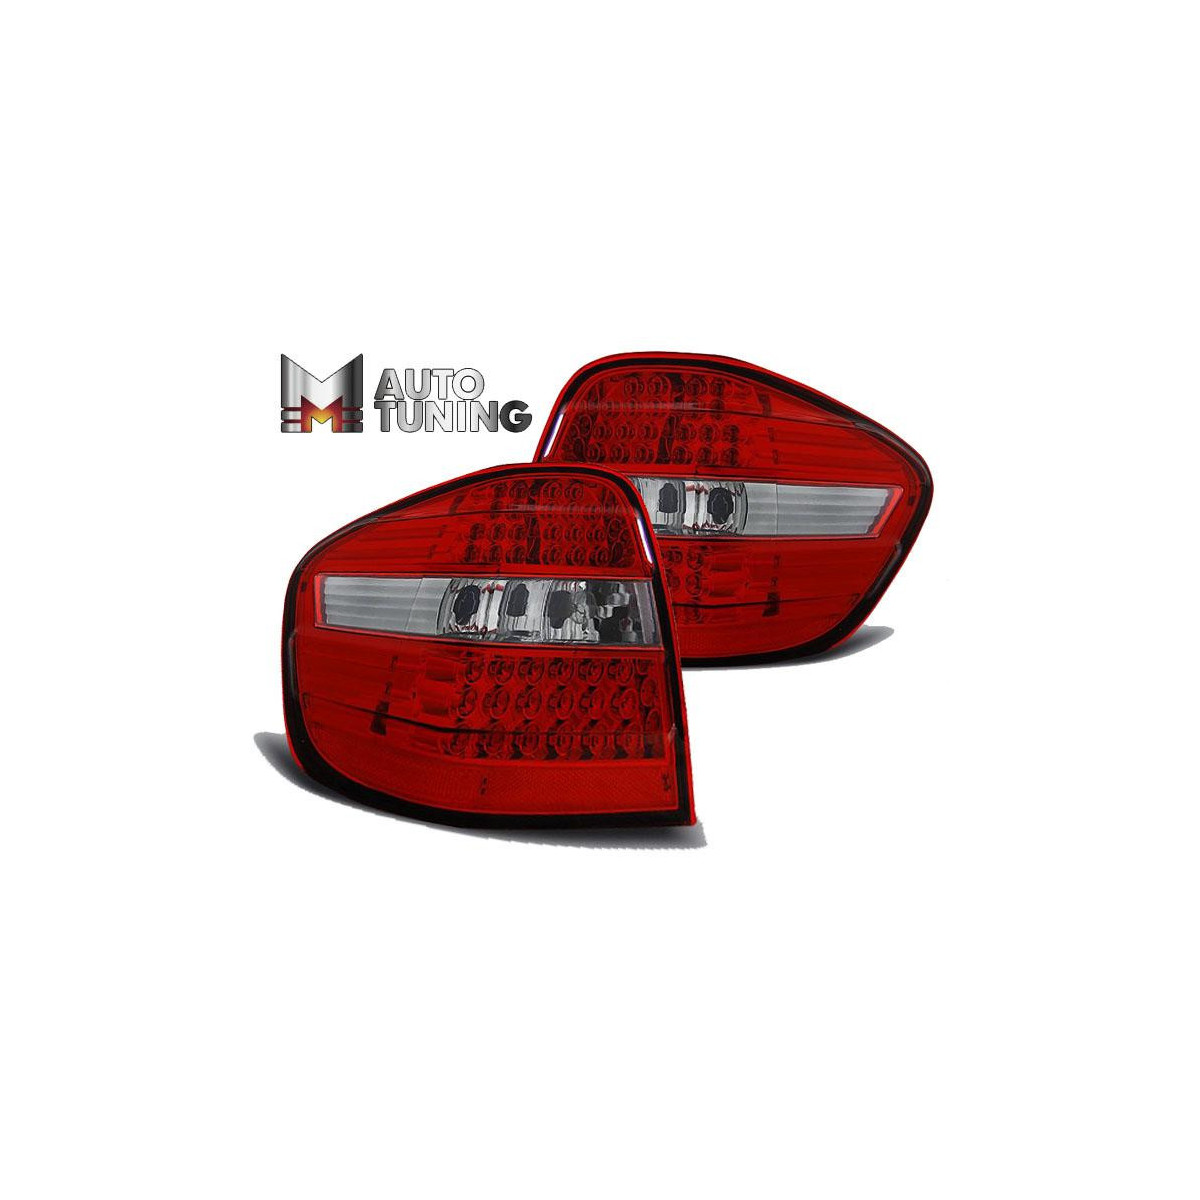 LAMPY MERCEDES M-KLASA W164 05-08 RED WHITE LED